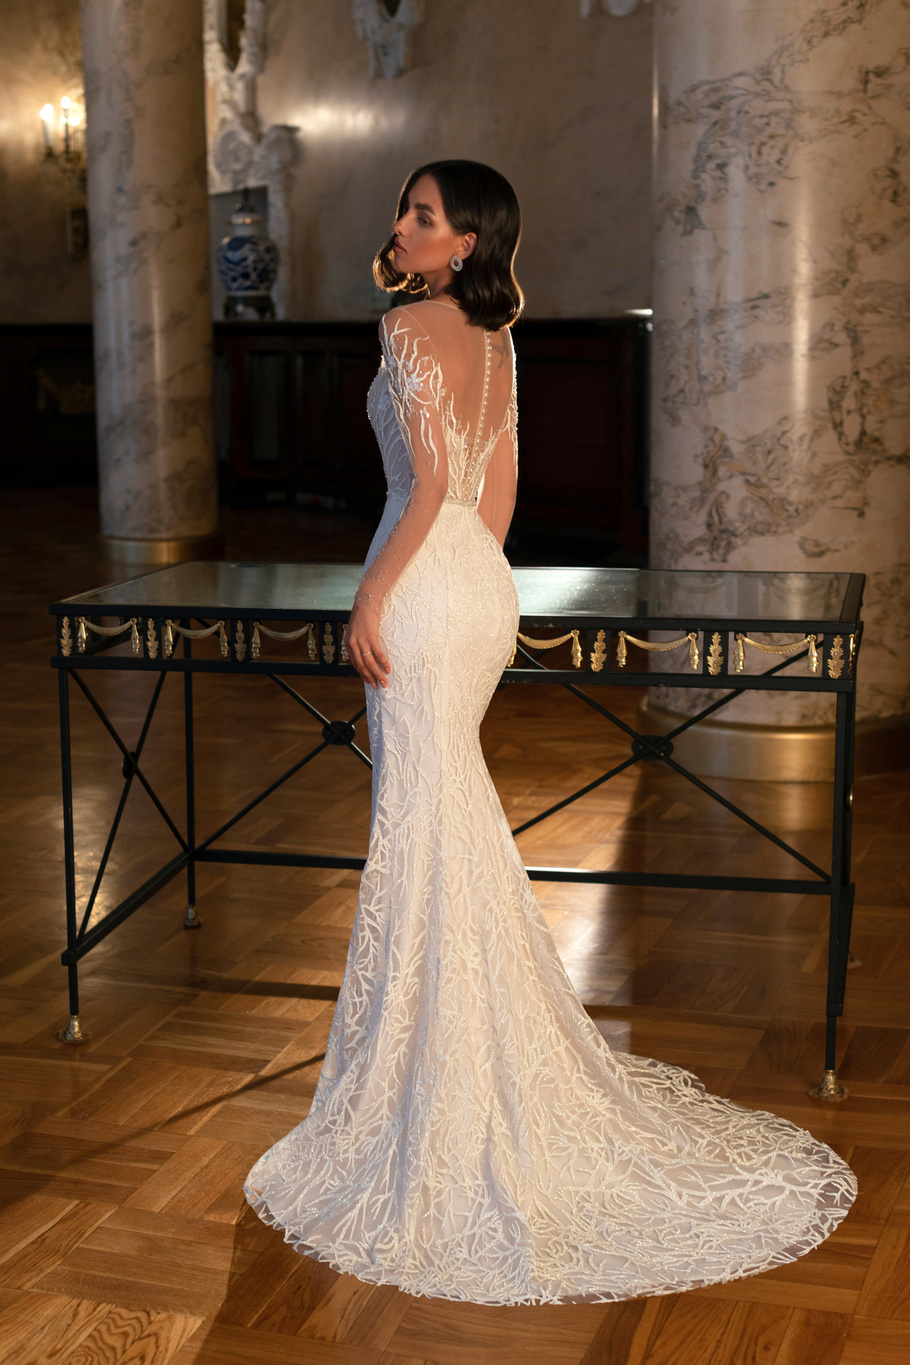 Купить свадебное платье «Марлиз» Мэрри Марк из коллекции Бриллиант 2022 года в салоне «Мэри Трюфель»